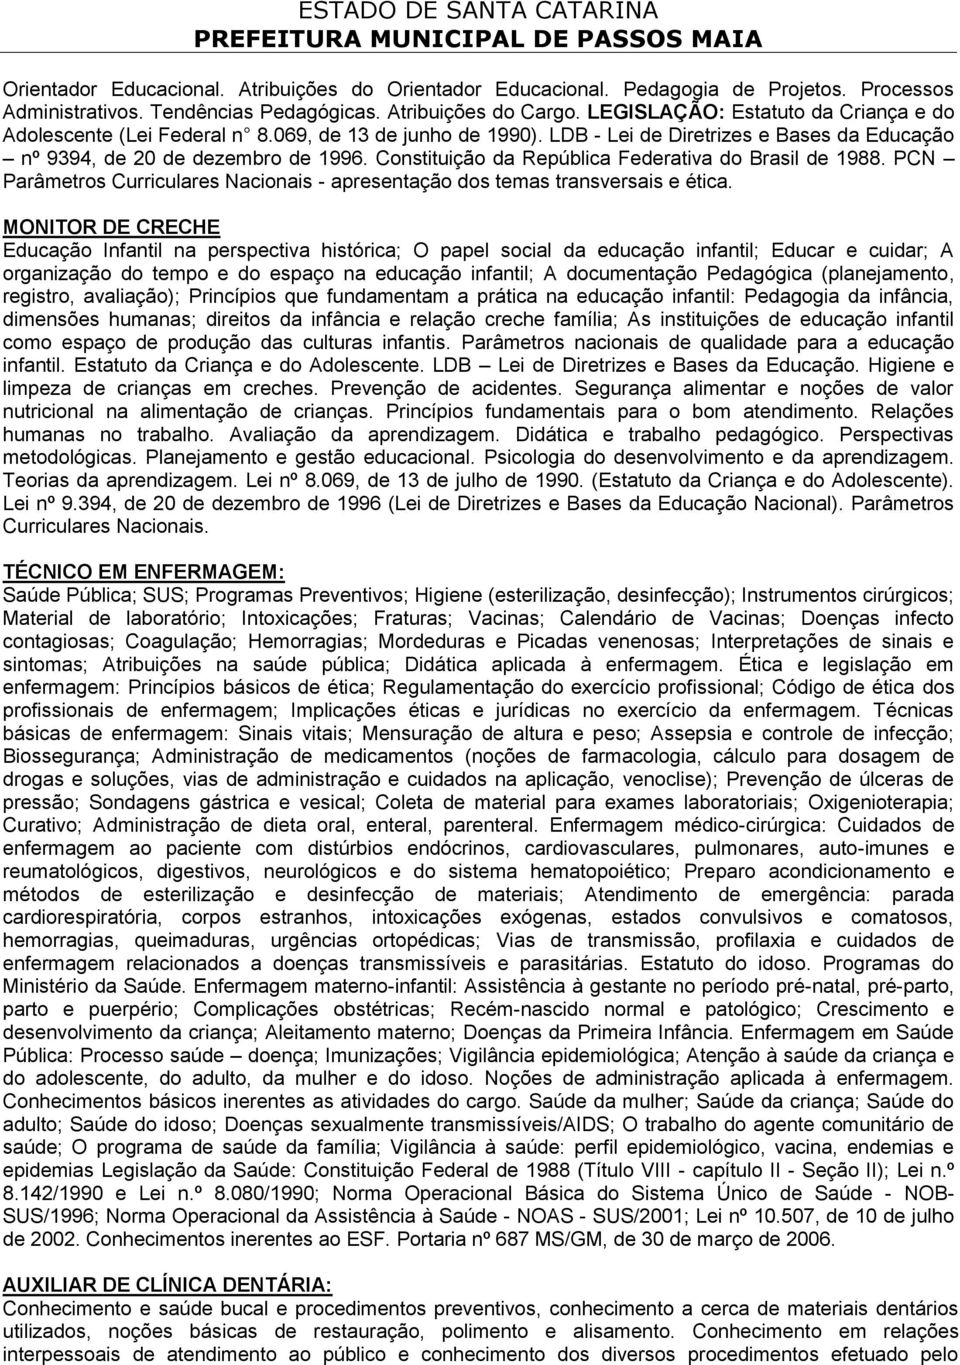 Constituição da República Federativa do Brasil de 1988. PCN Parâmetros Curriculares Nacionais - apresentação dos temas transversais e ética.